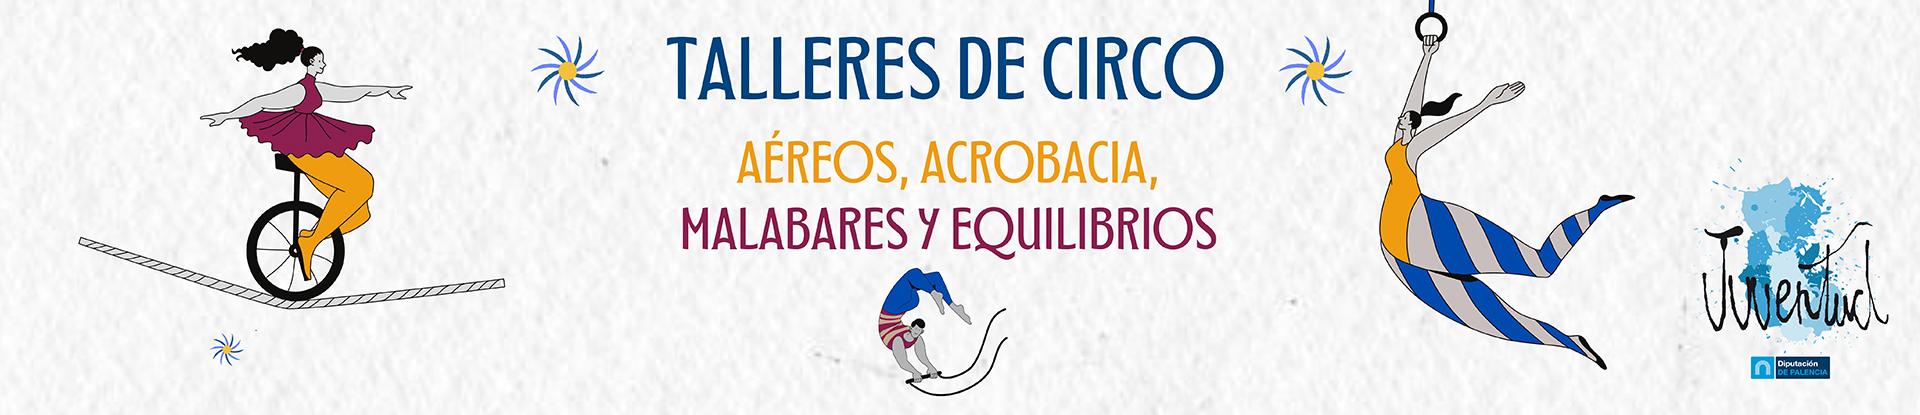 Banner Taller de circo